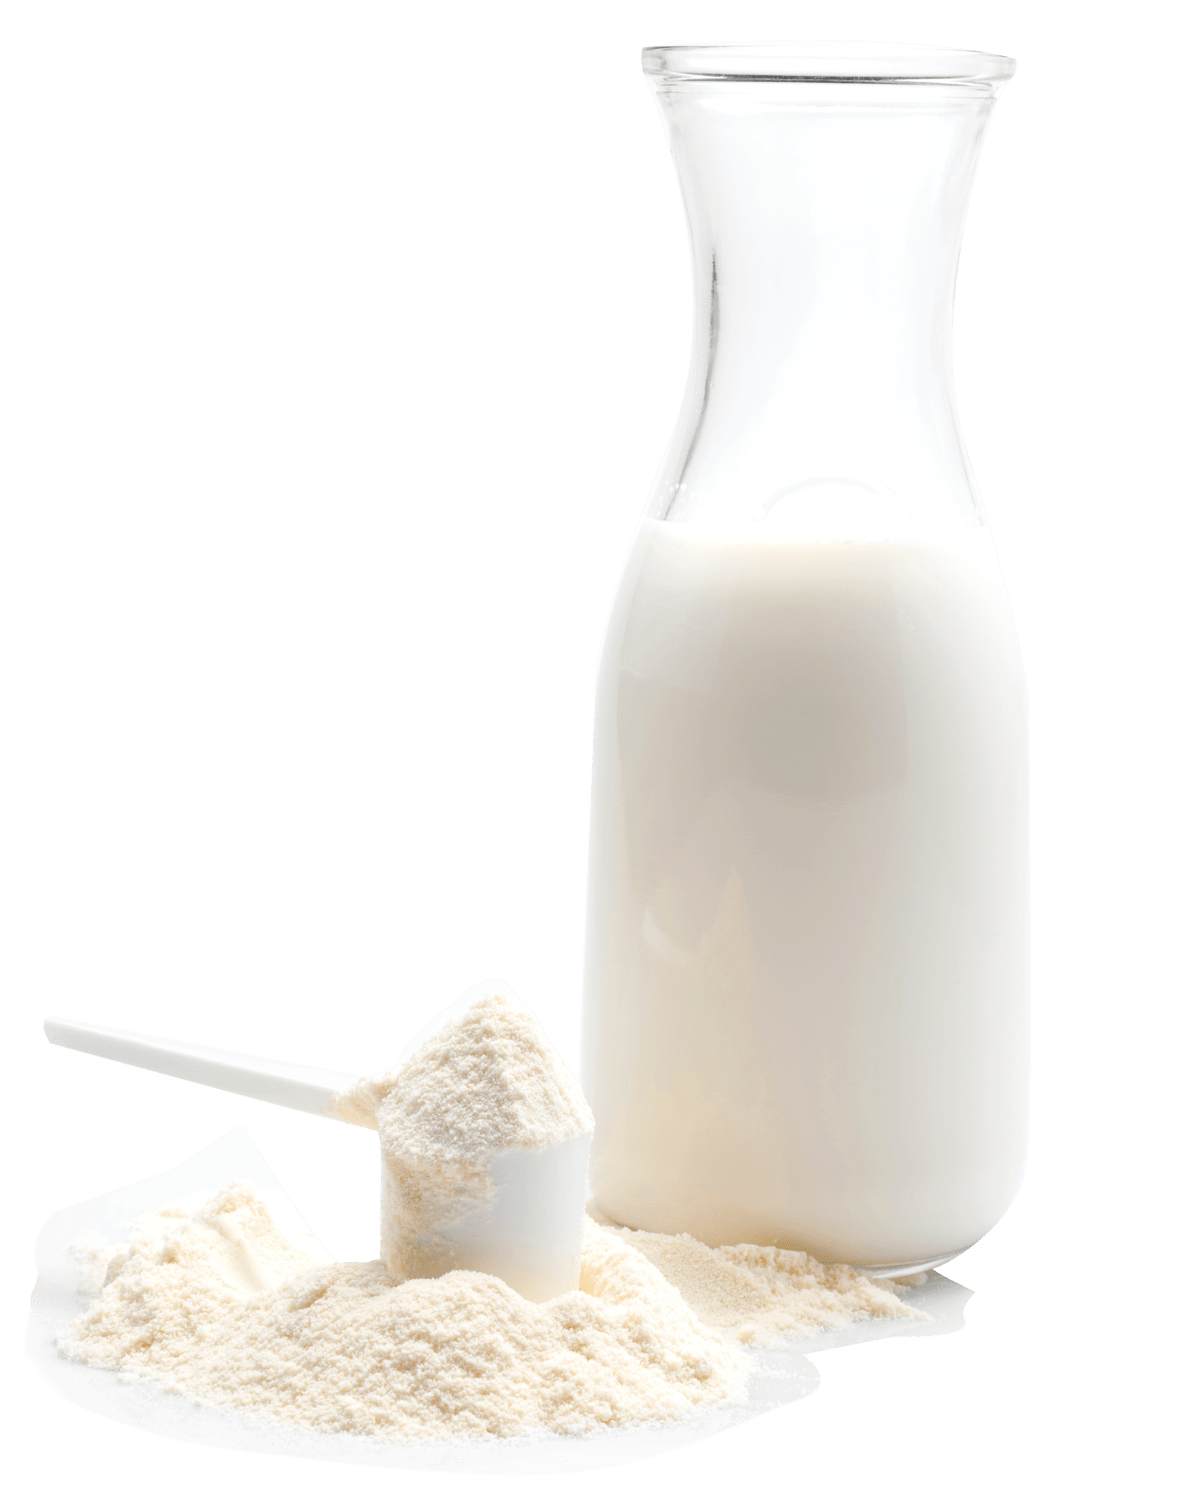 Trensite Dairy Richer Creamier